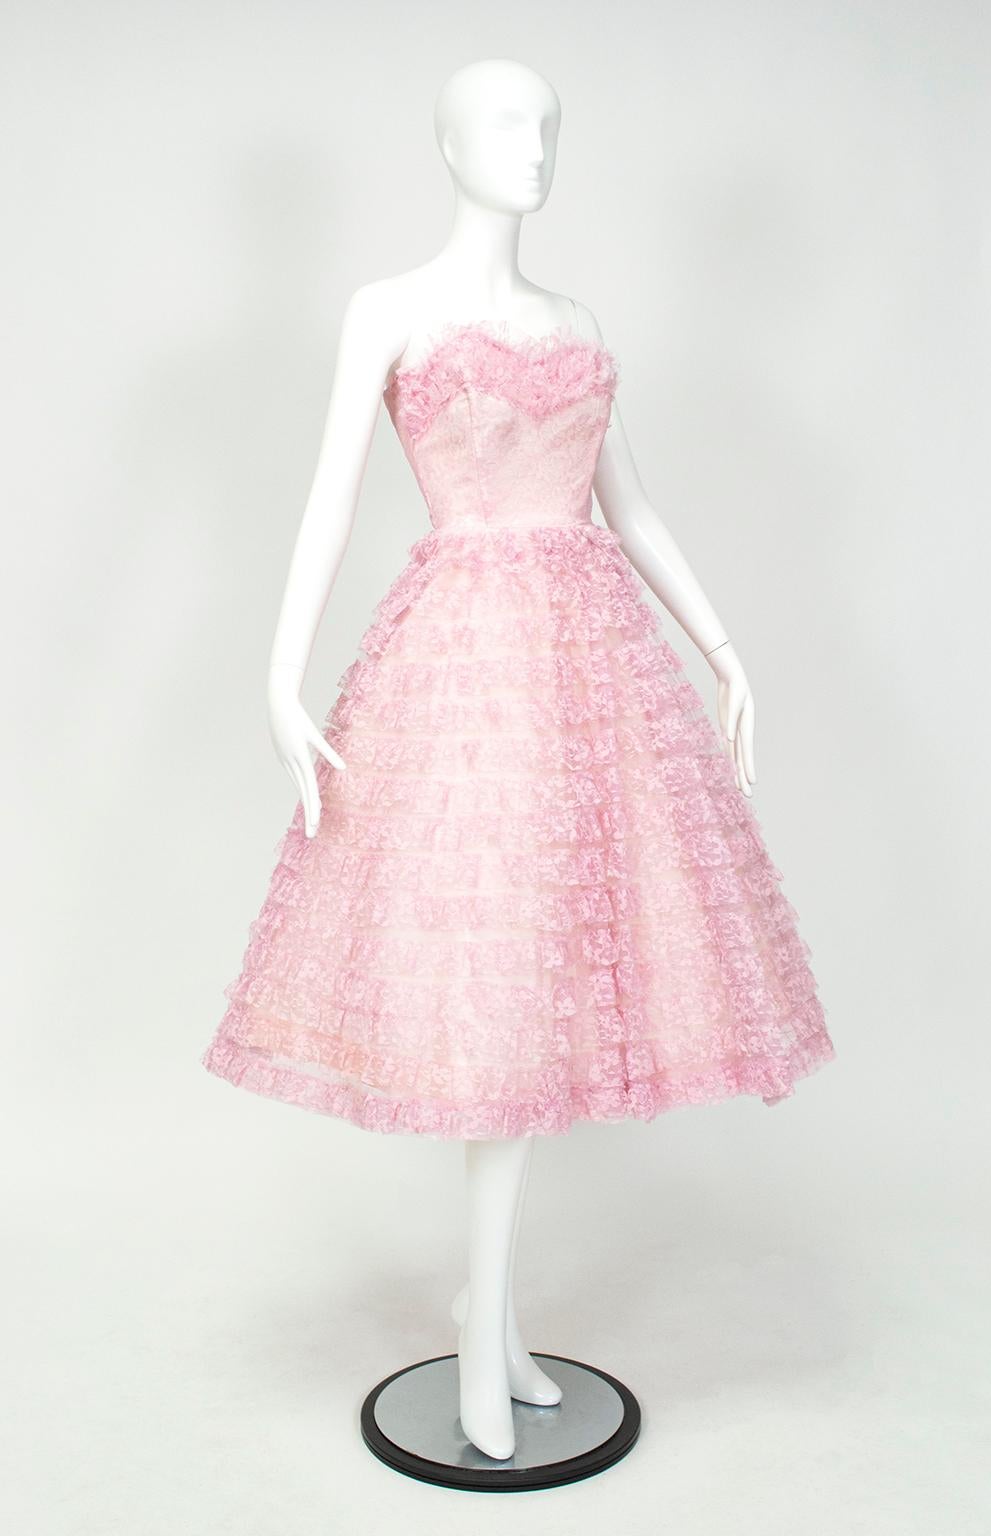 Cette petite confiserie de couleur rose et lavande est semblable à une robe Christian Dior Haute Couture qui a fait ses débuts lors du défilé Resort/Cruise 2011 à Shanghai.  Le prix du Dior était * légèrement* plus élevé, puisqu'il était estimé à